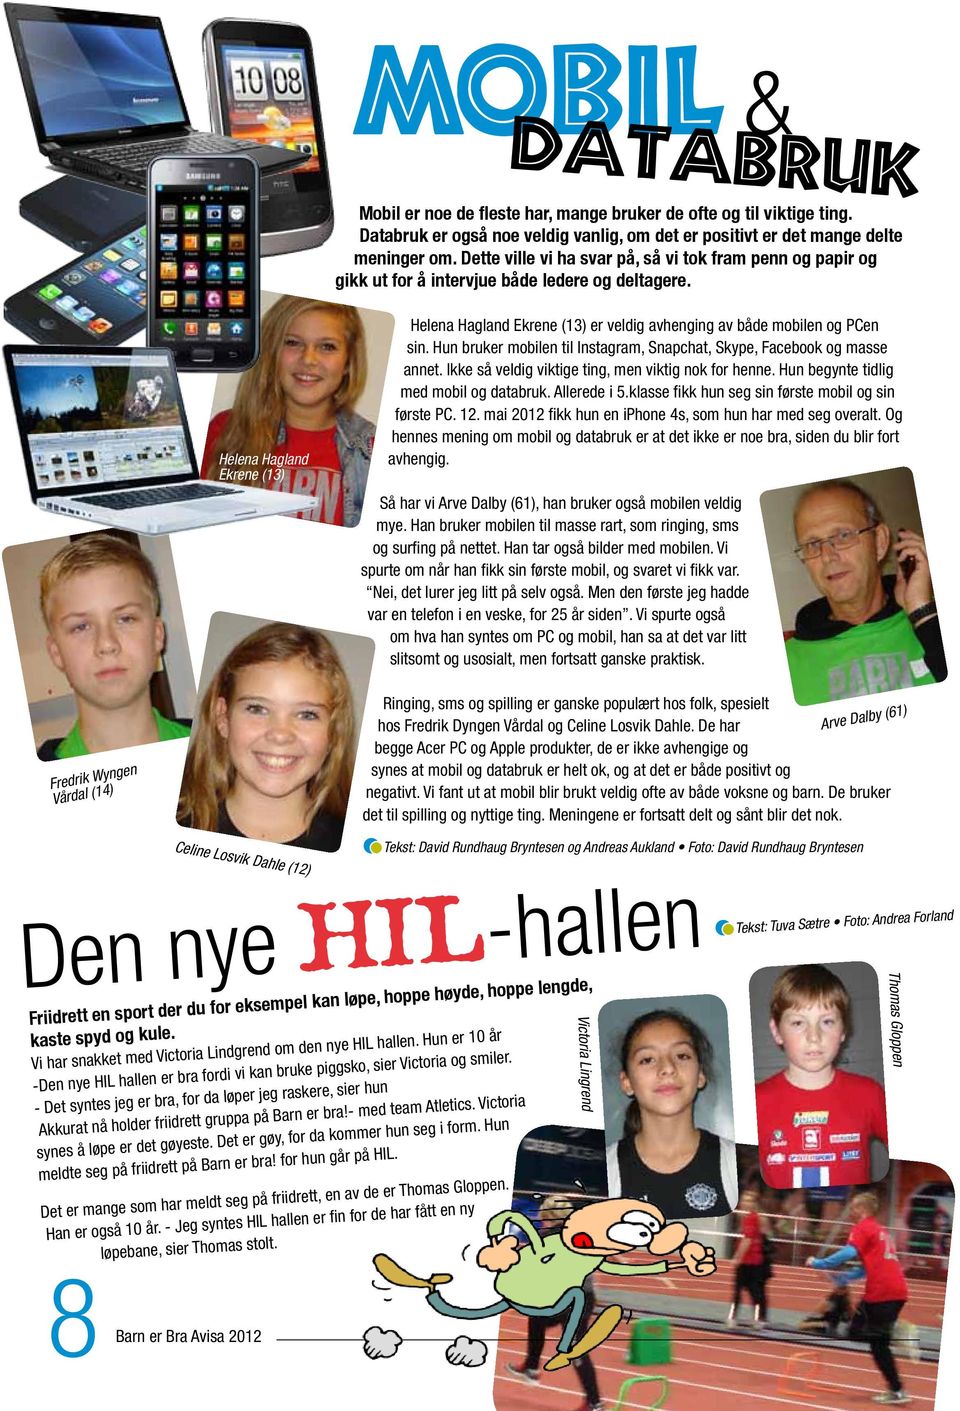 Helena Hagland Ekrene (13) Helena Hagland Ekrene (13) er veldig avhenging av både mobilen og PCen sin. Hun bruker mobilen til Instagram, Snapchat, Skype, Facebook og masse annet.